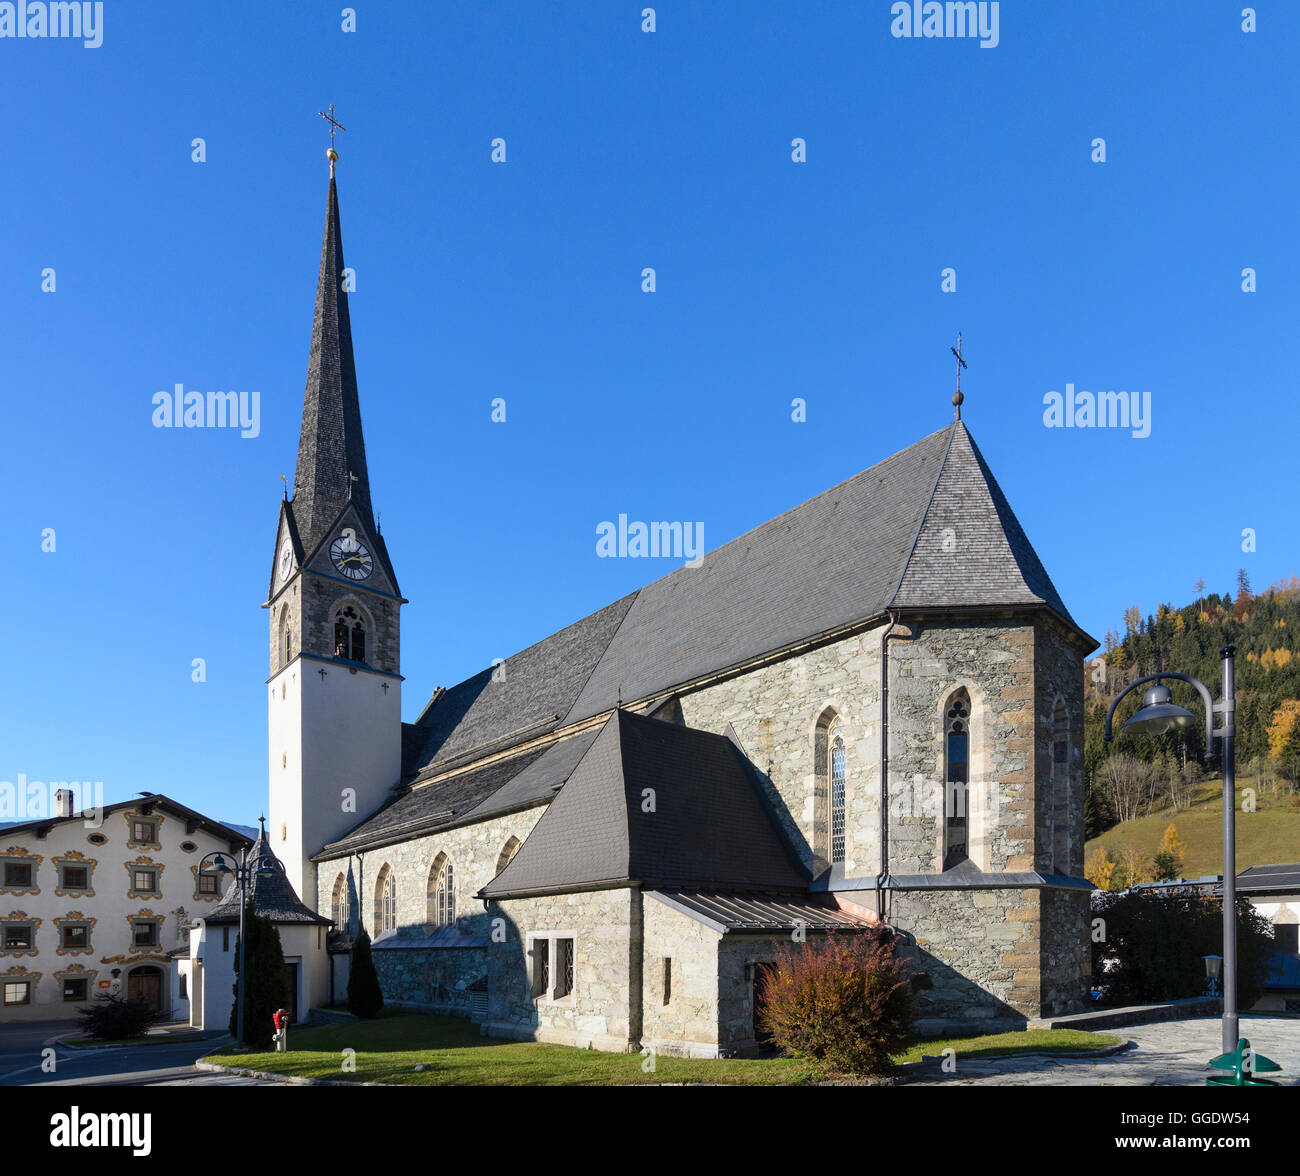 Bruck an der Großglocknerstraße: chiesa hl. Maria, Austria, Salisburgo, del Pinzgau Foto Stock